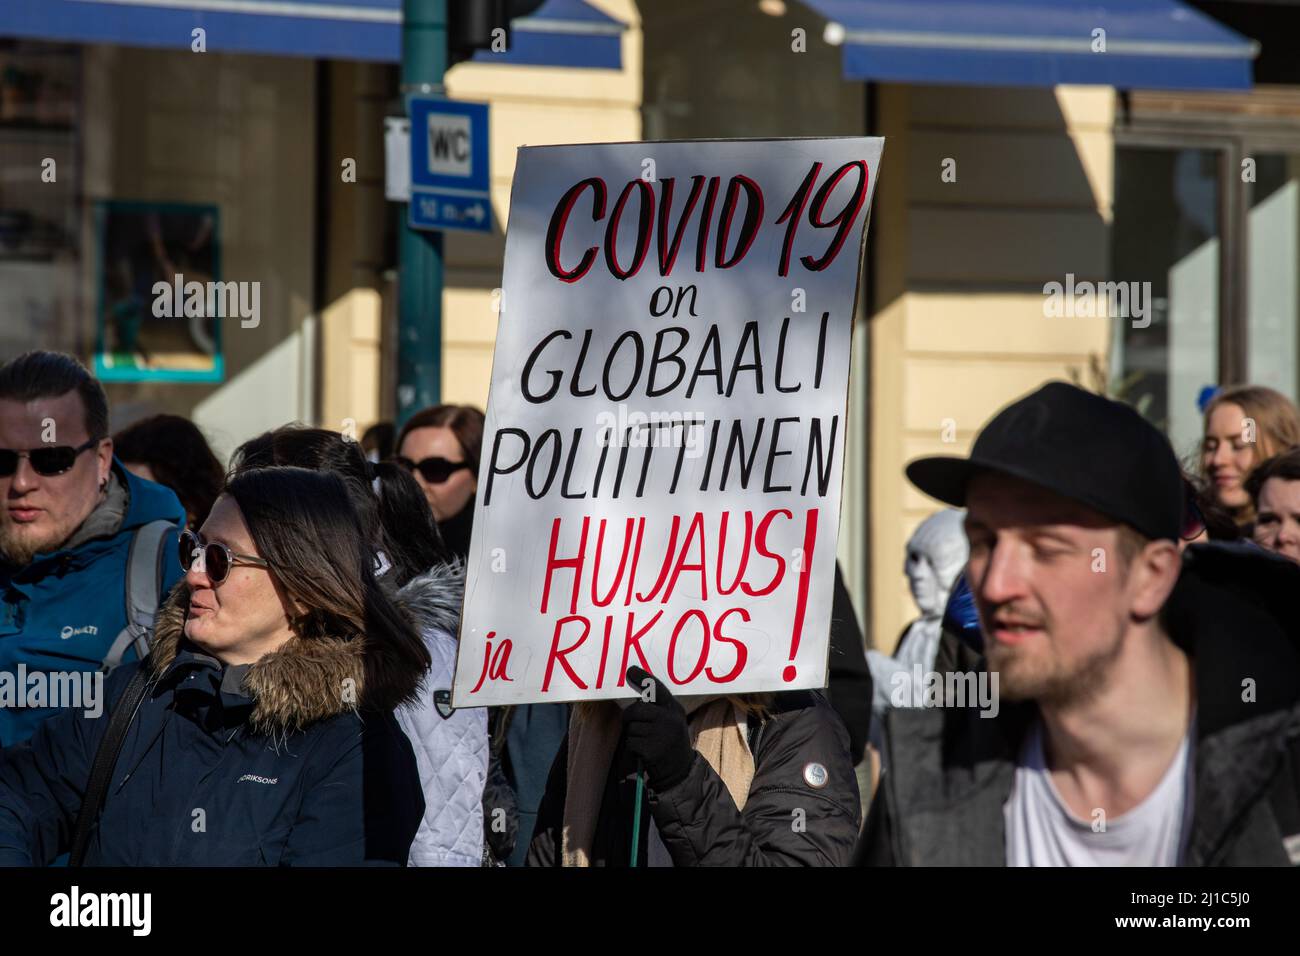 Covid-19 sur globaali poliittinen huijaus ja rikos! Inscrivez-vous à la démonstration mondiale 7,0 à Helsinki, en Finlande. Banque D'Images